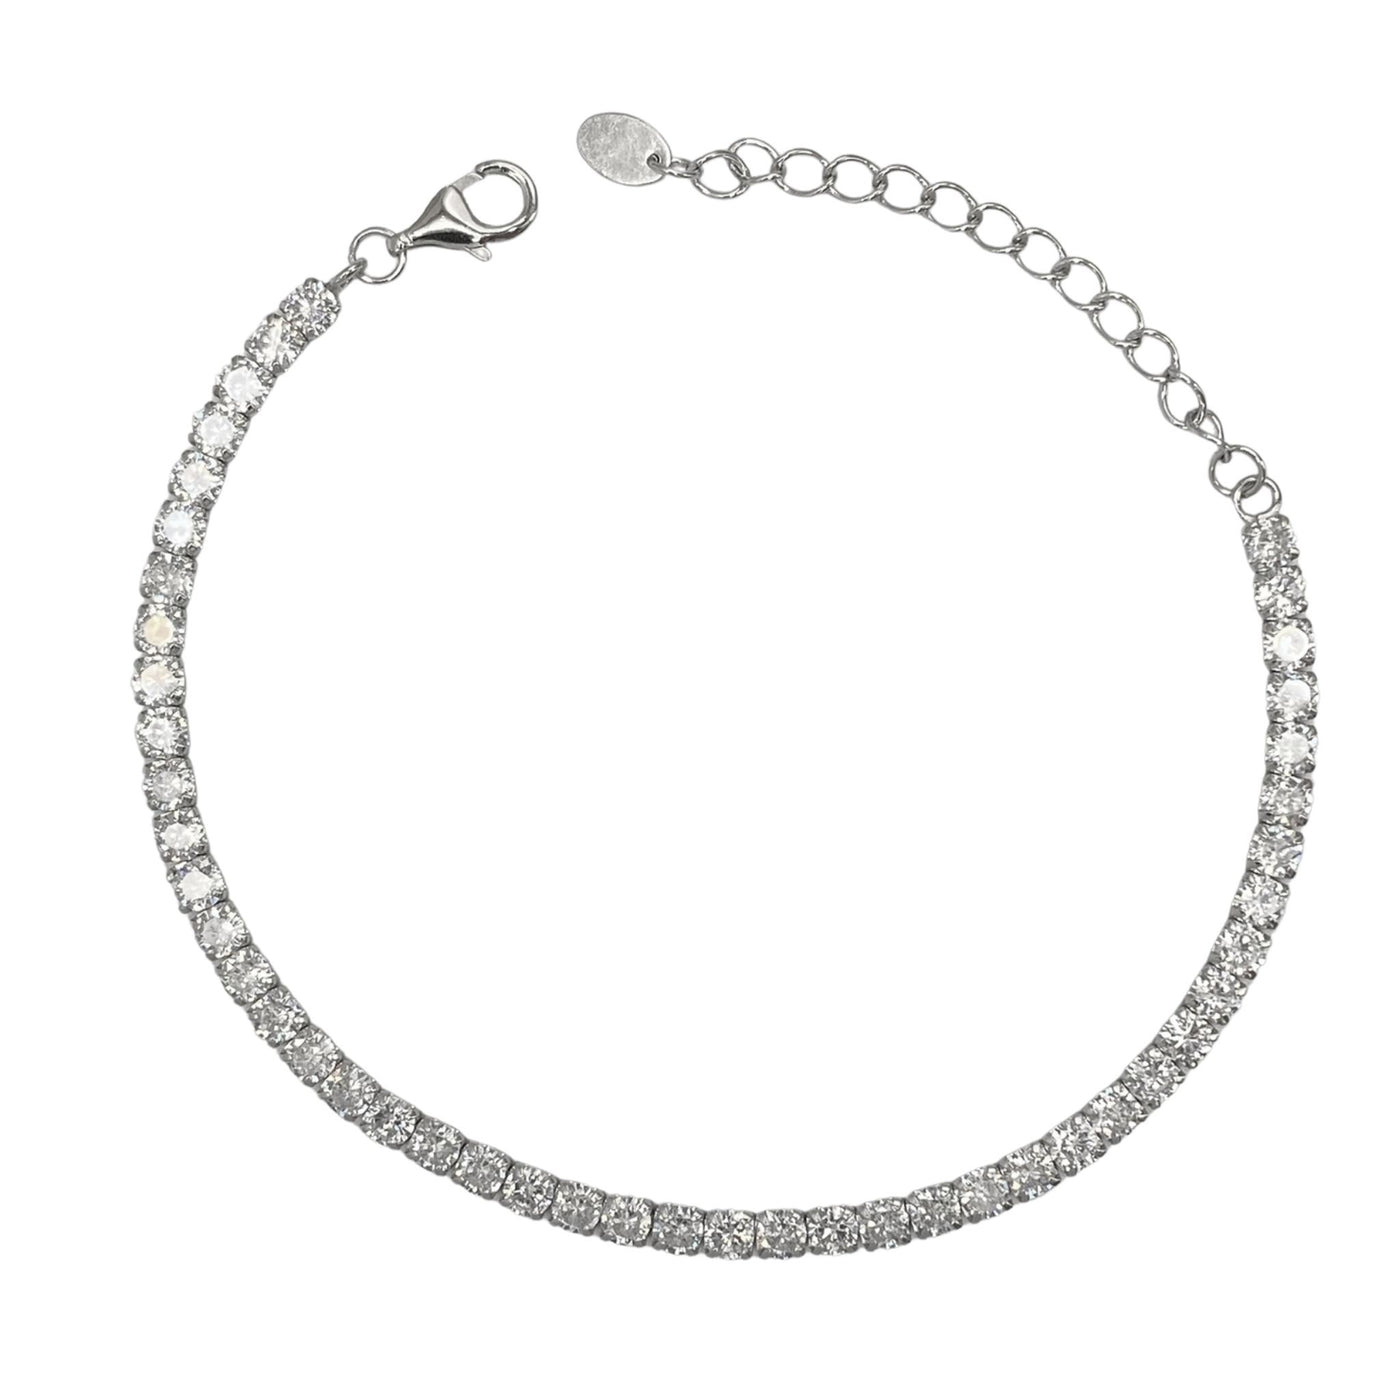 Silver tennis bracelet - 3 mm